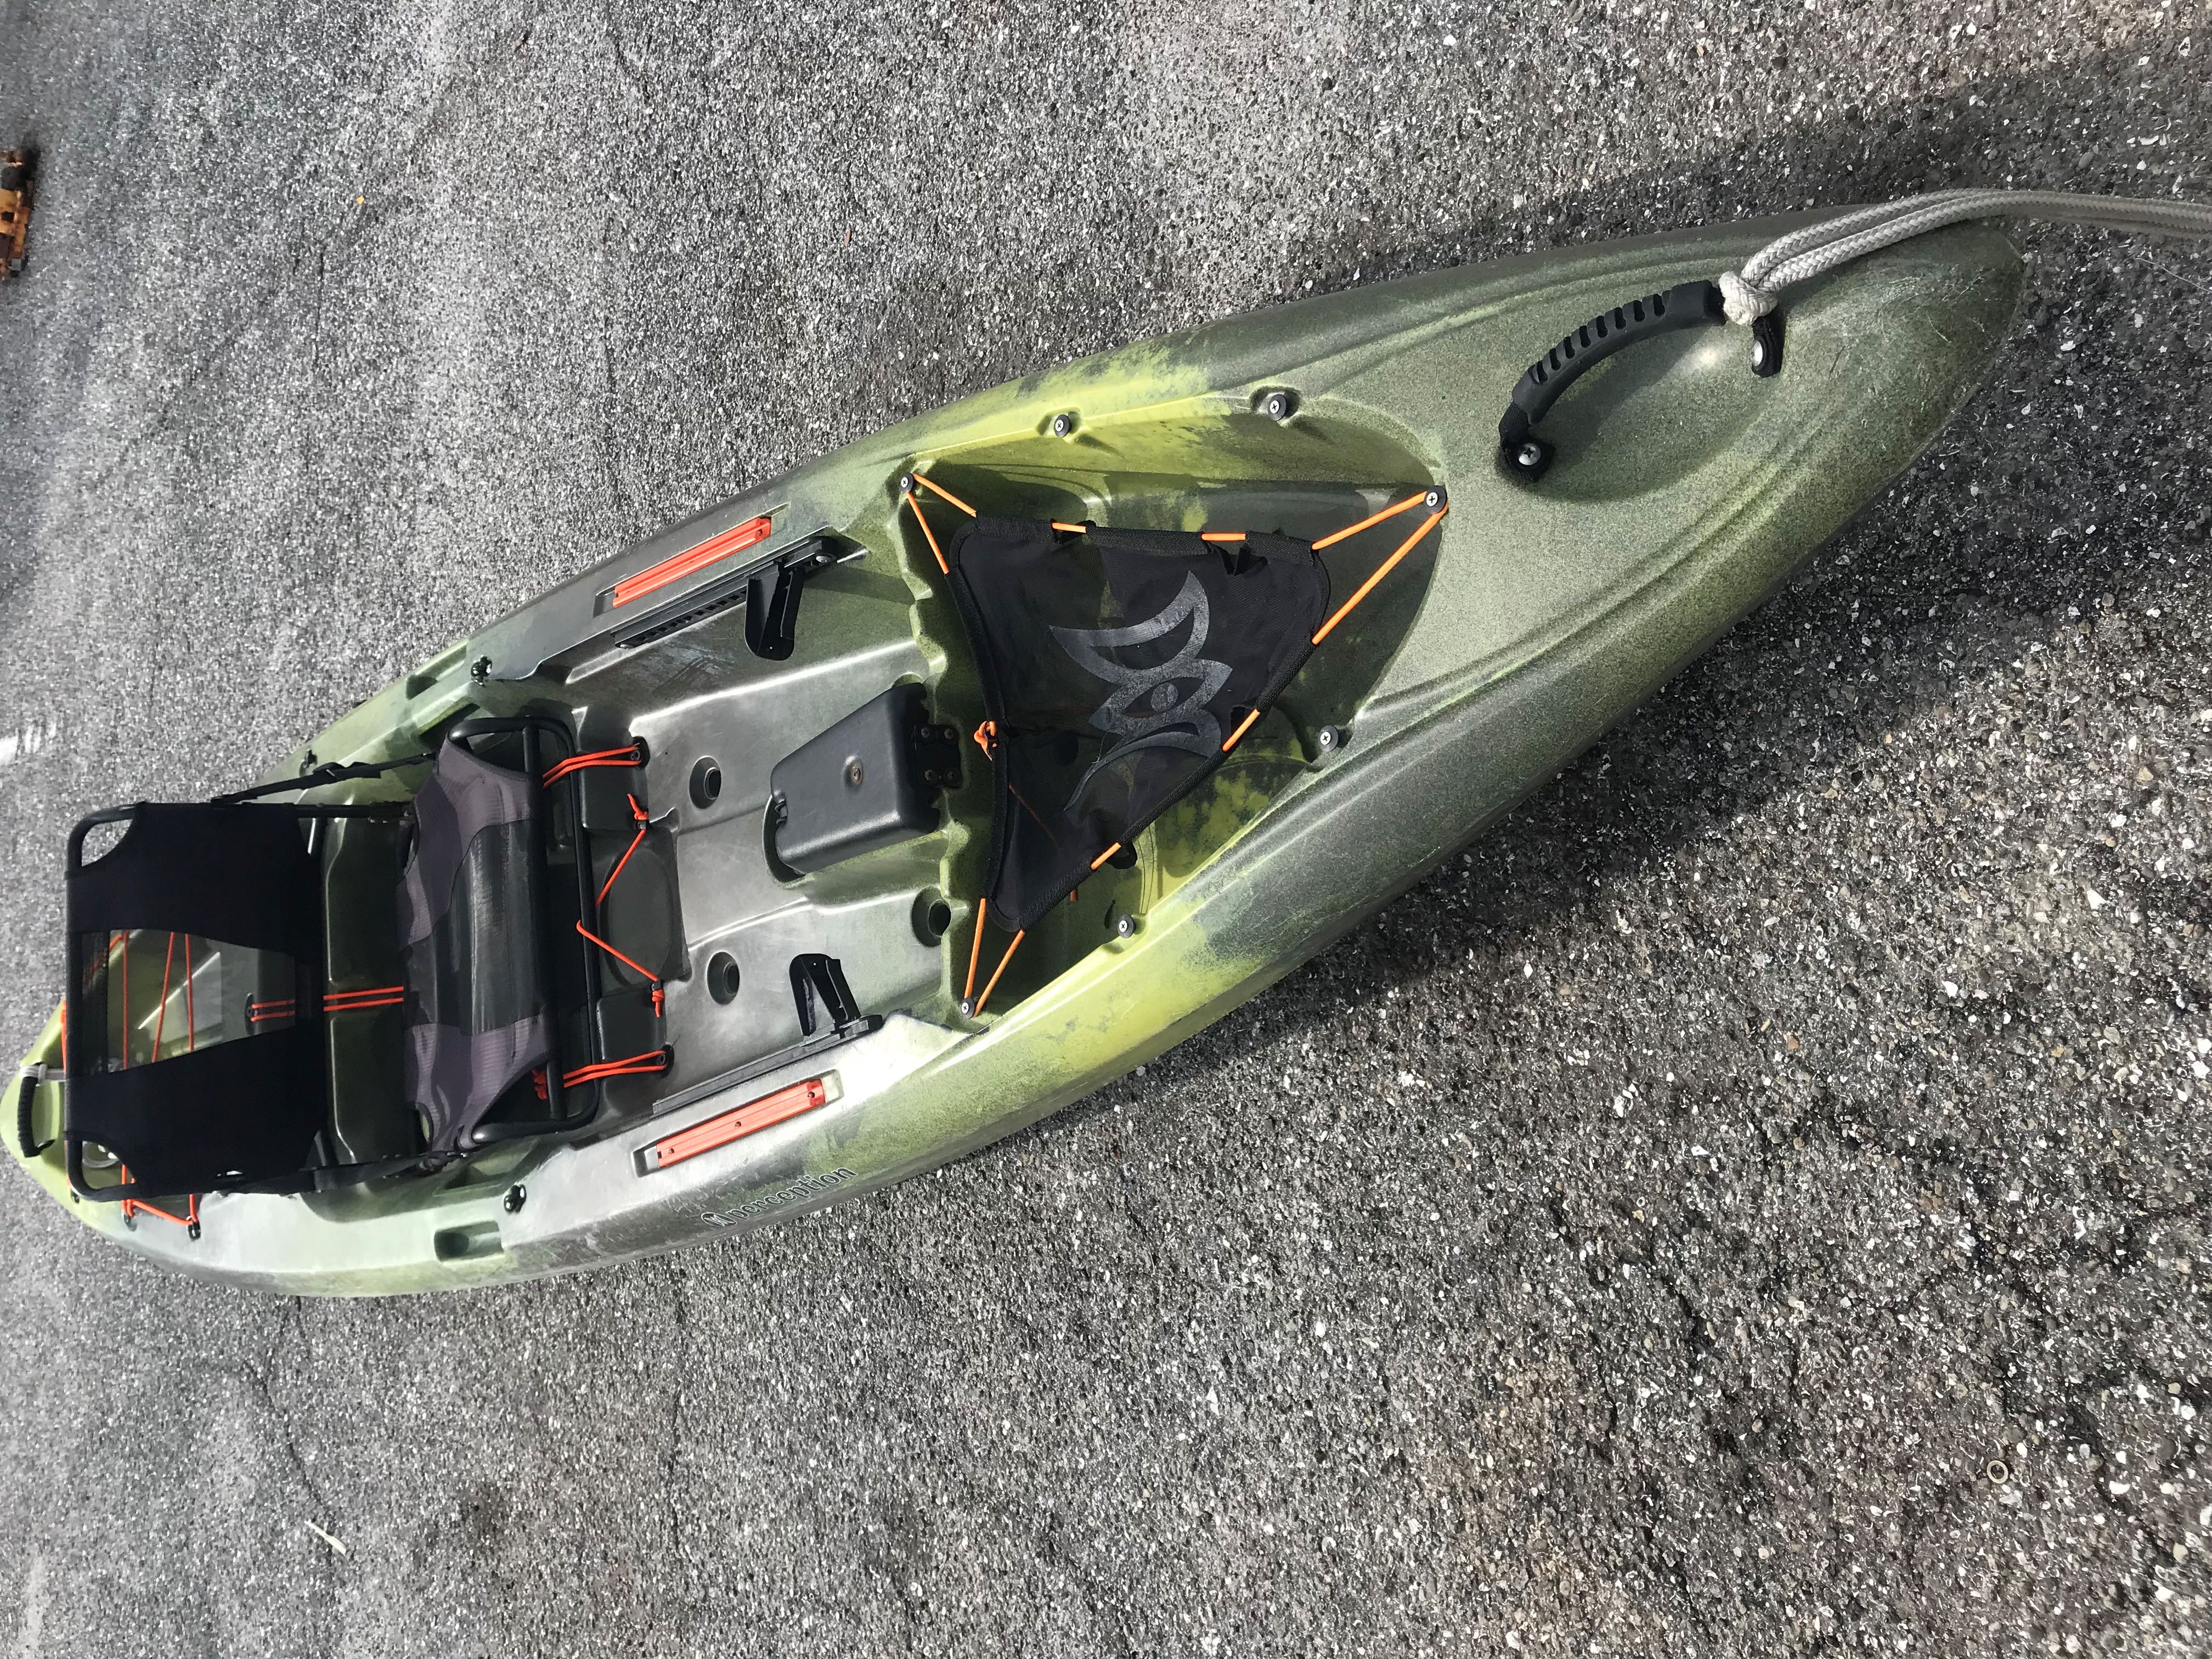 #2 Kayak - Venice